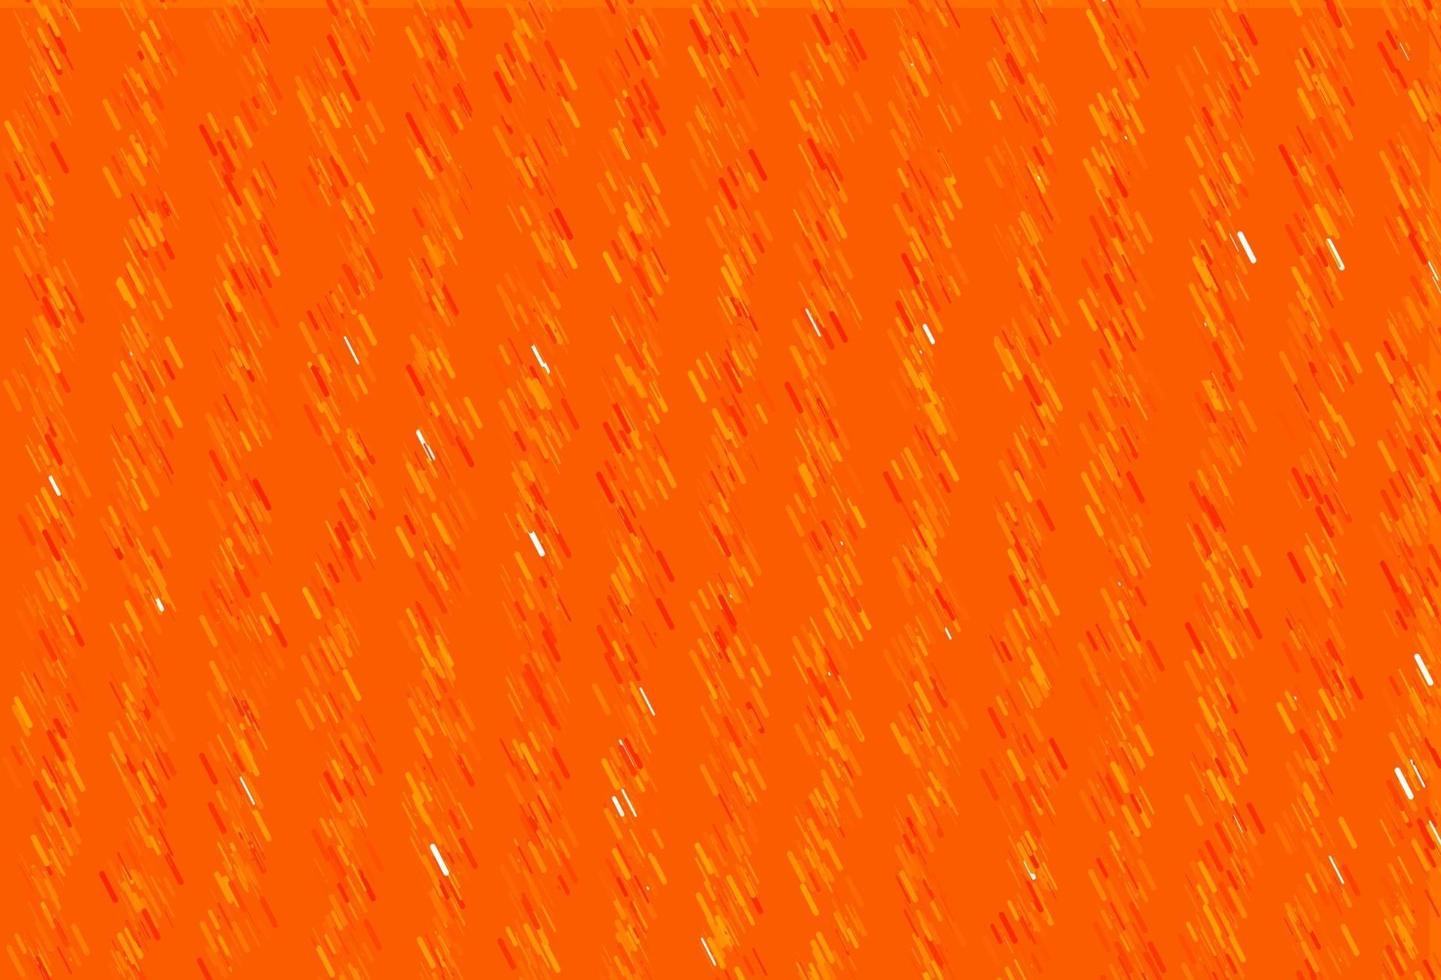 fundo laranja claro do vetor com linhas retas.